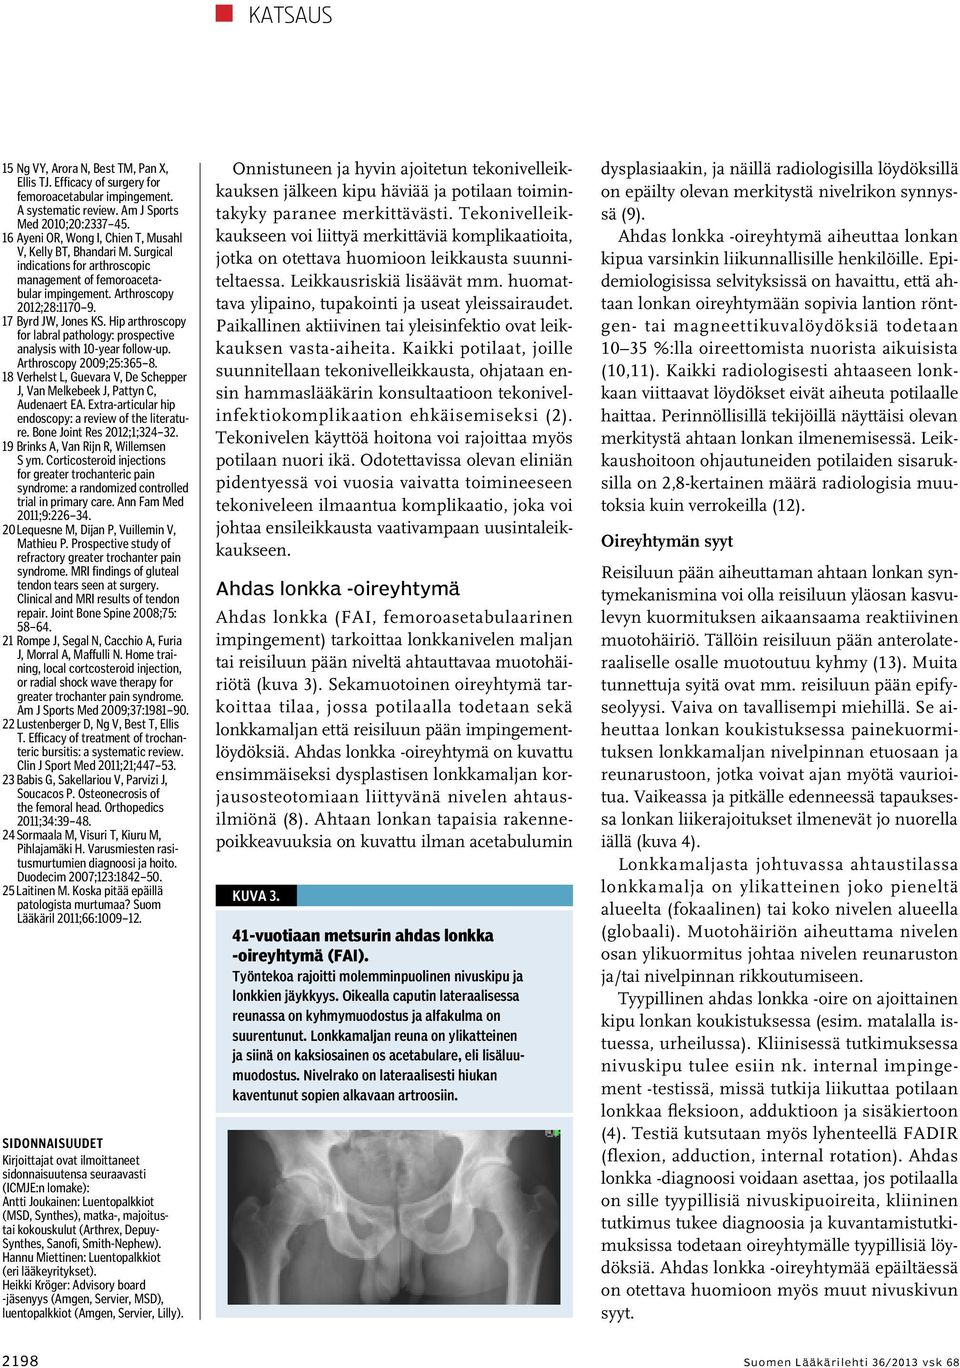 Hip arthroscopy for labral pathology: prospective analysis with 10-year follow-up. Arthroscopy 2009;25:365 8. 18 Verhelst L, Guevara V, De Schepper J, Van Melkebeek J, Pattyn C, Audenaert EA.